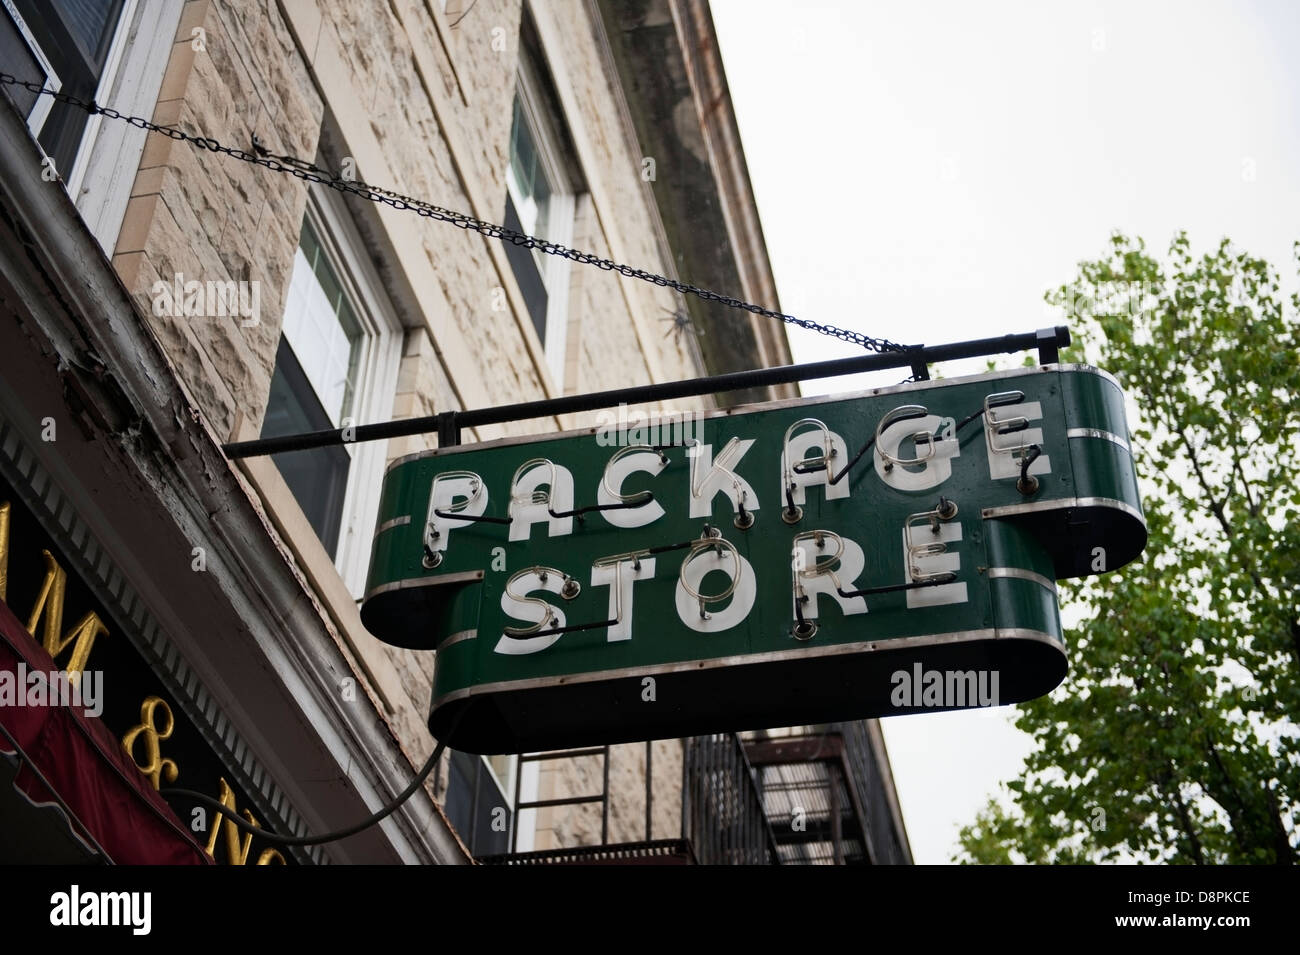 Package Store sign in Stockbridge Massachusetts Stock Photo